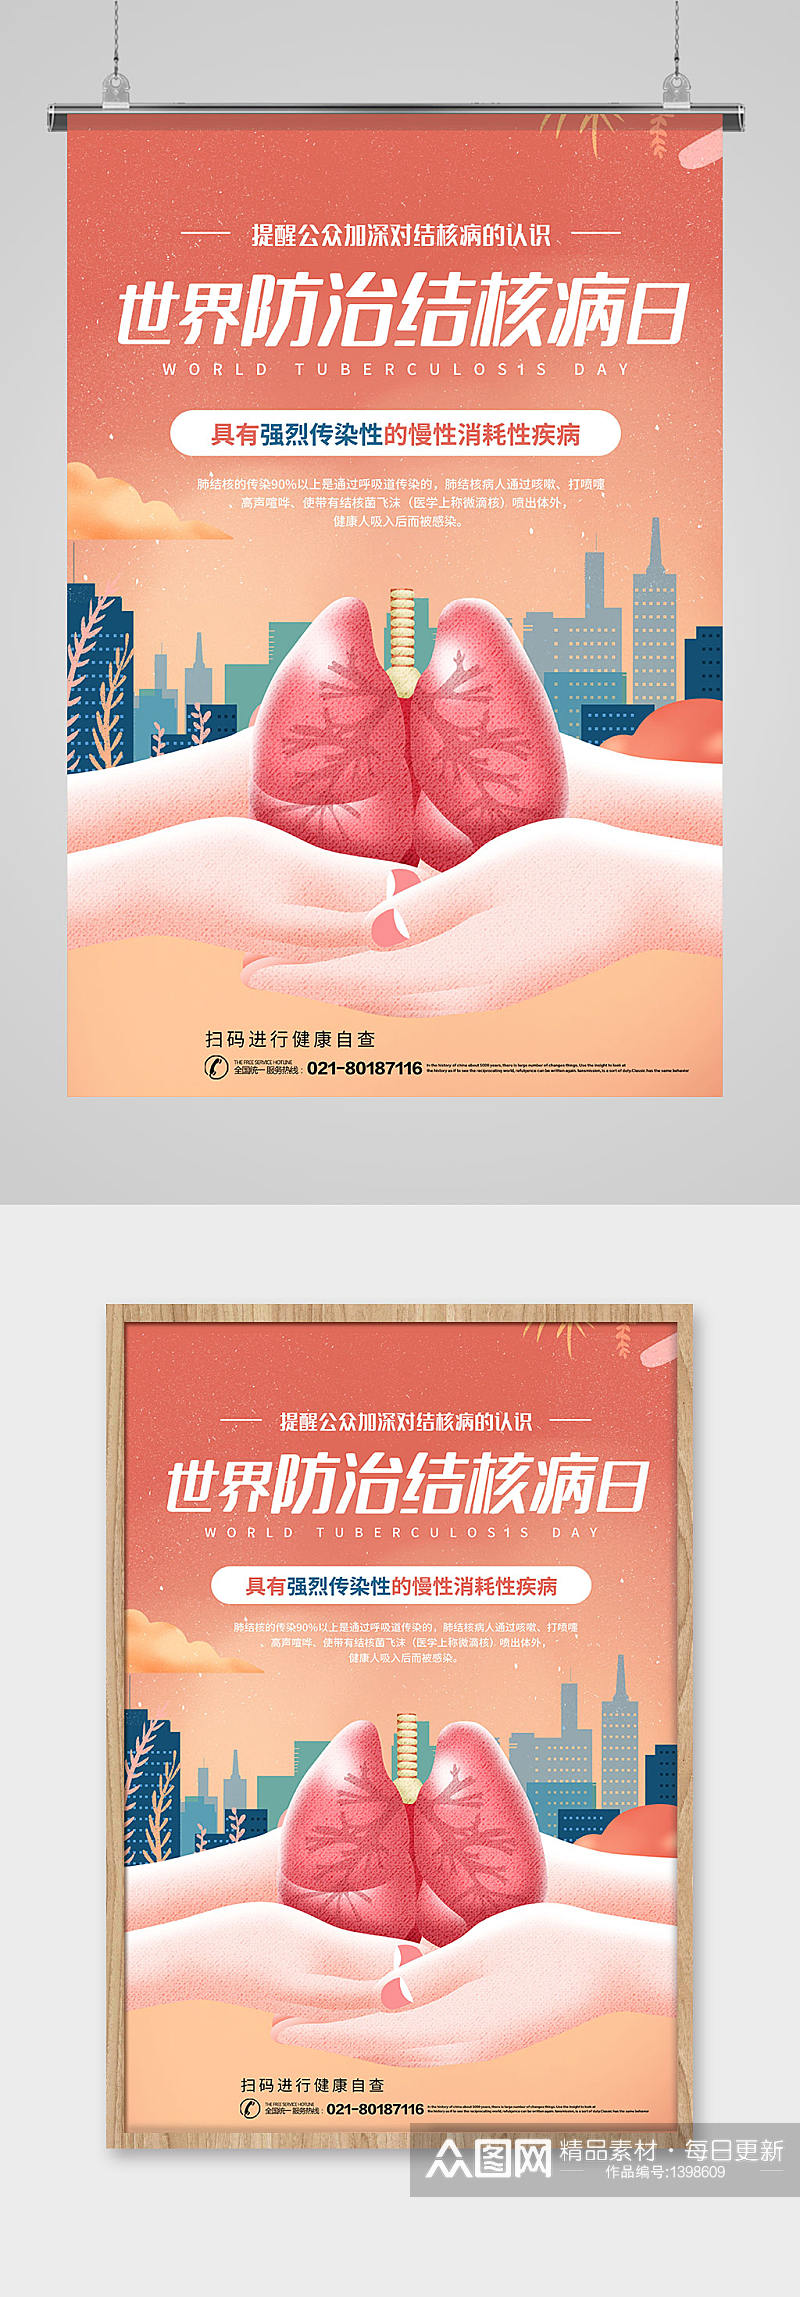 世界防治肺结核病日宣传海报展板素材